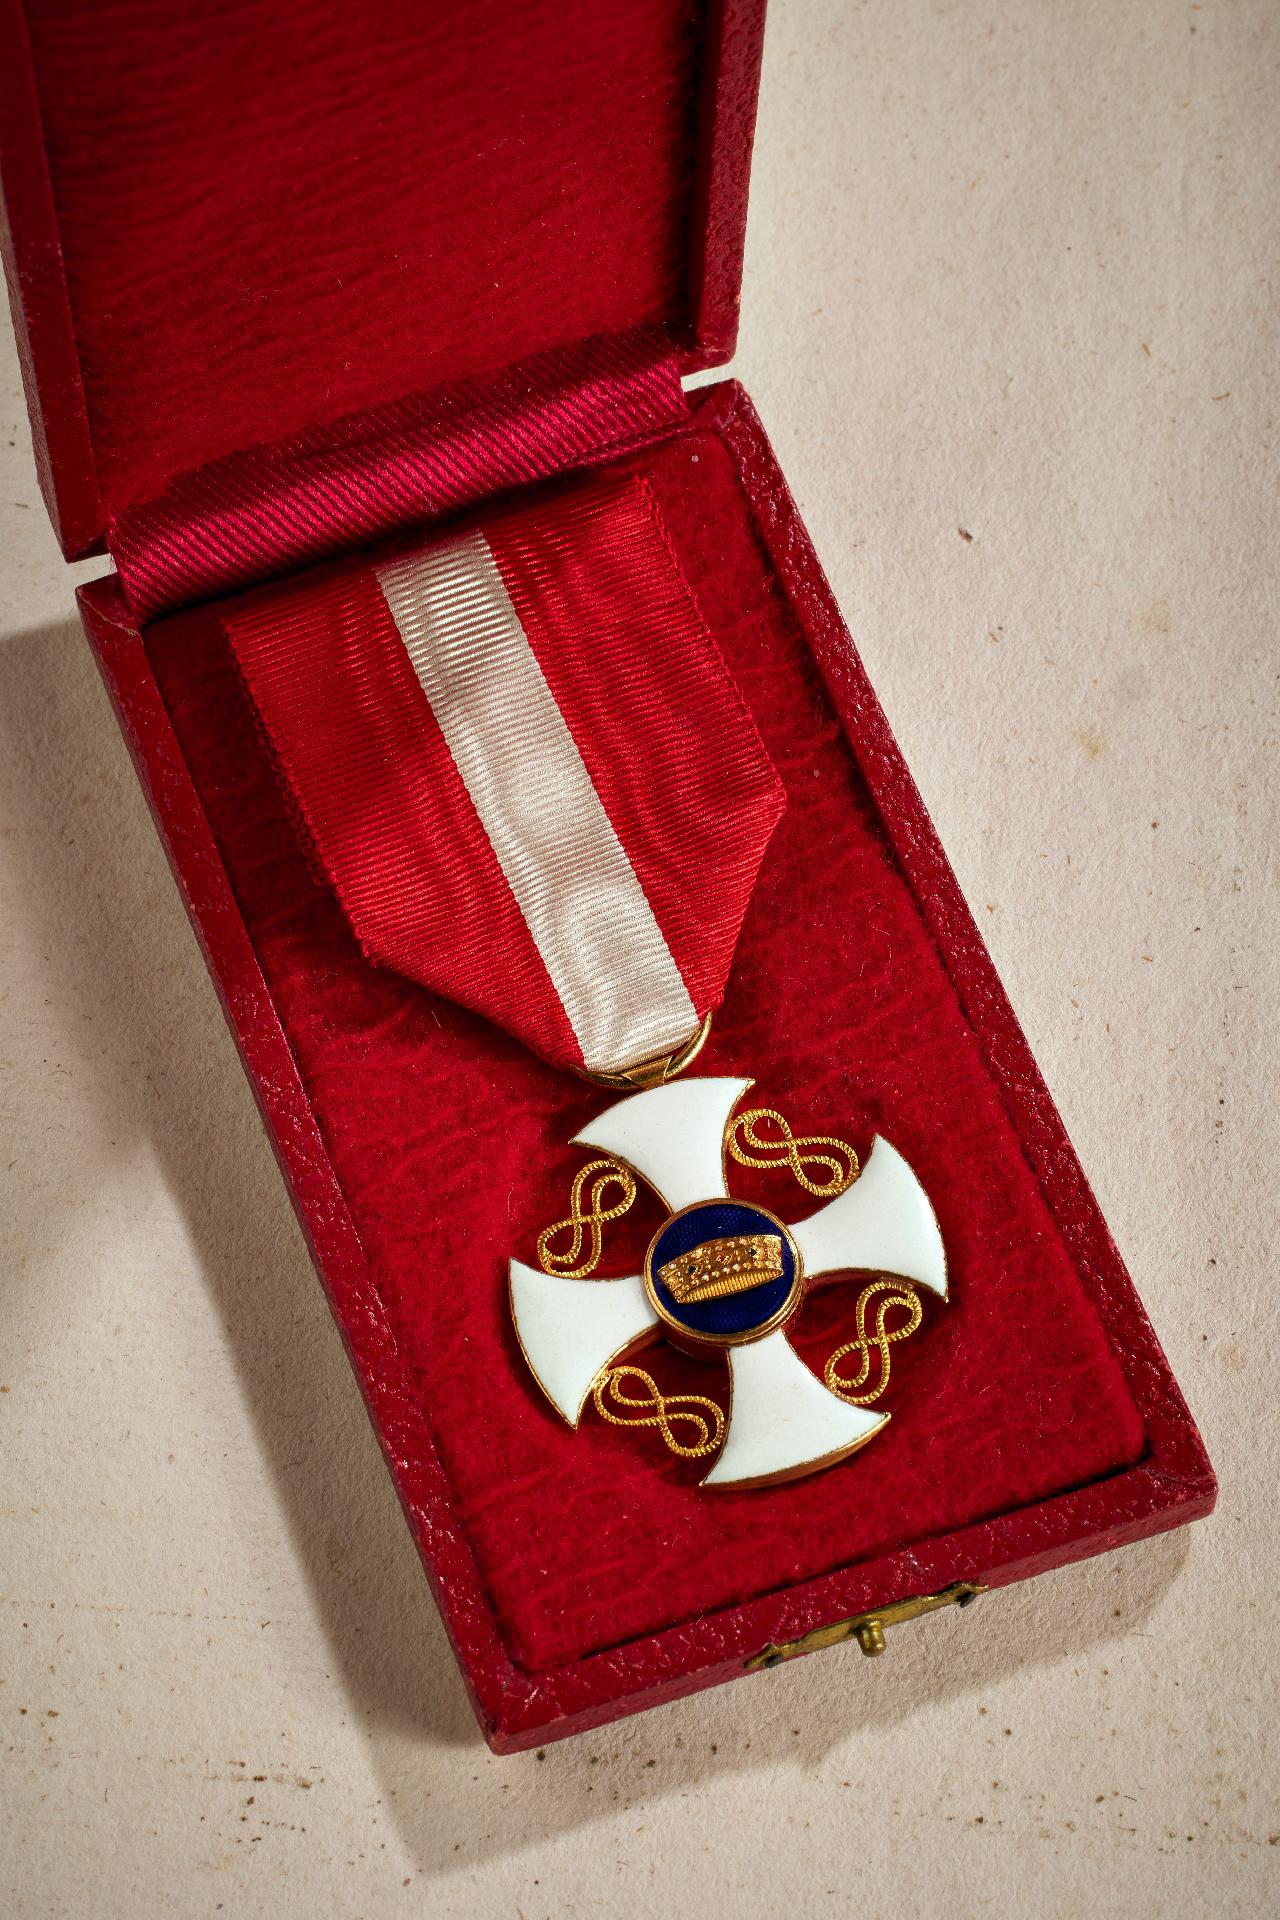 Italien : Orden der Krone von Italien: Ritterkreuz.